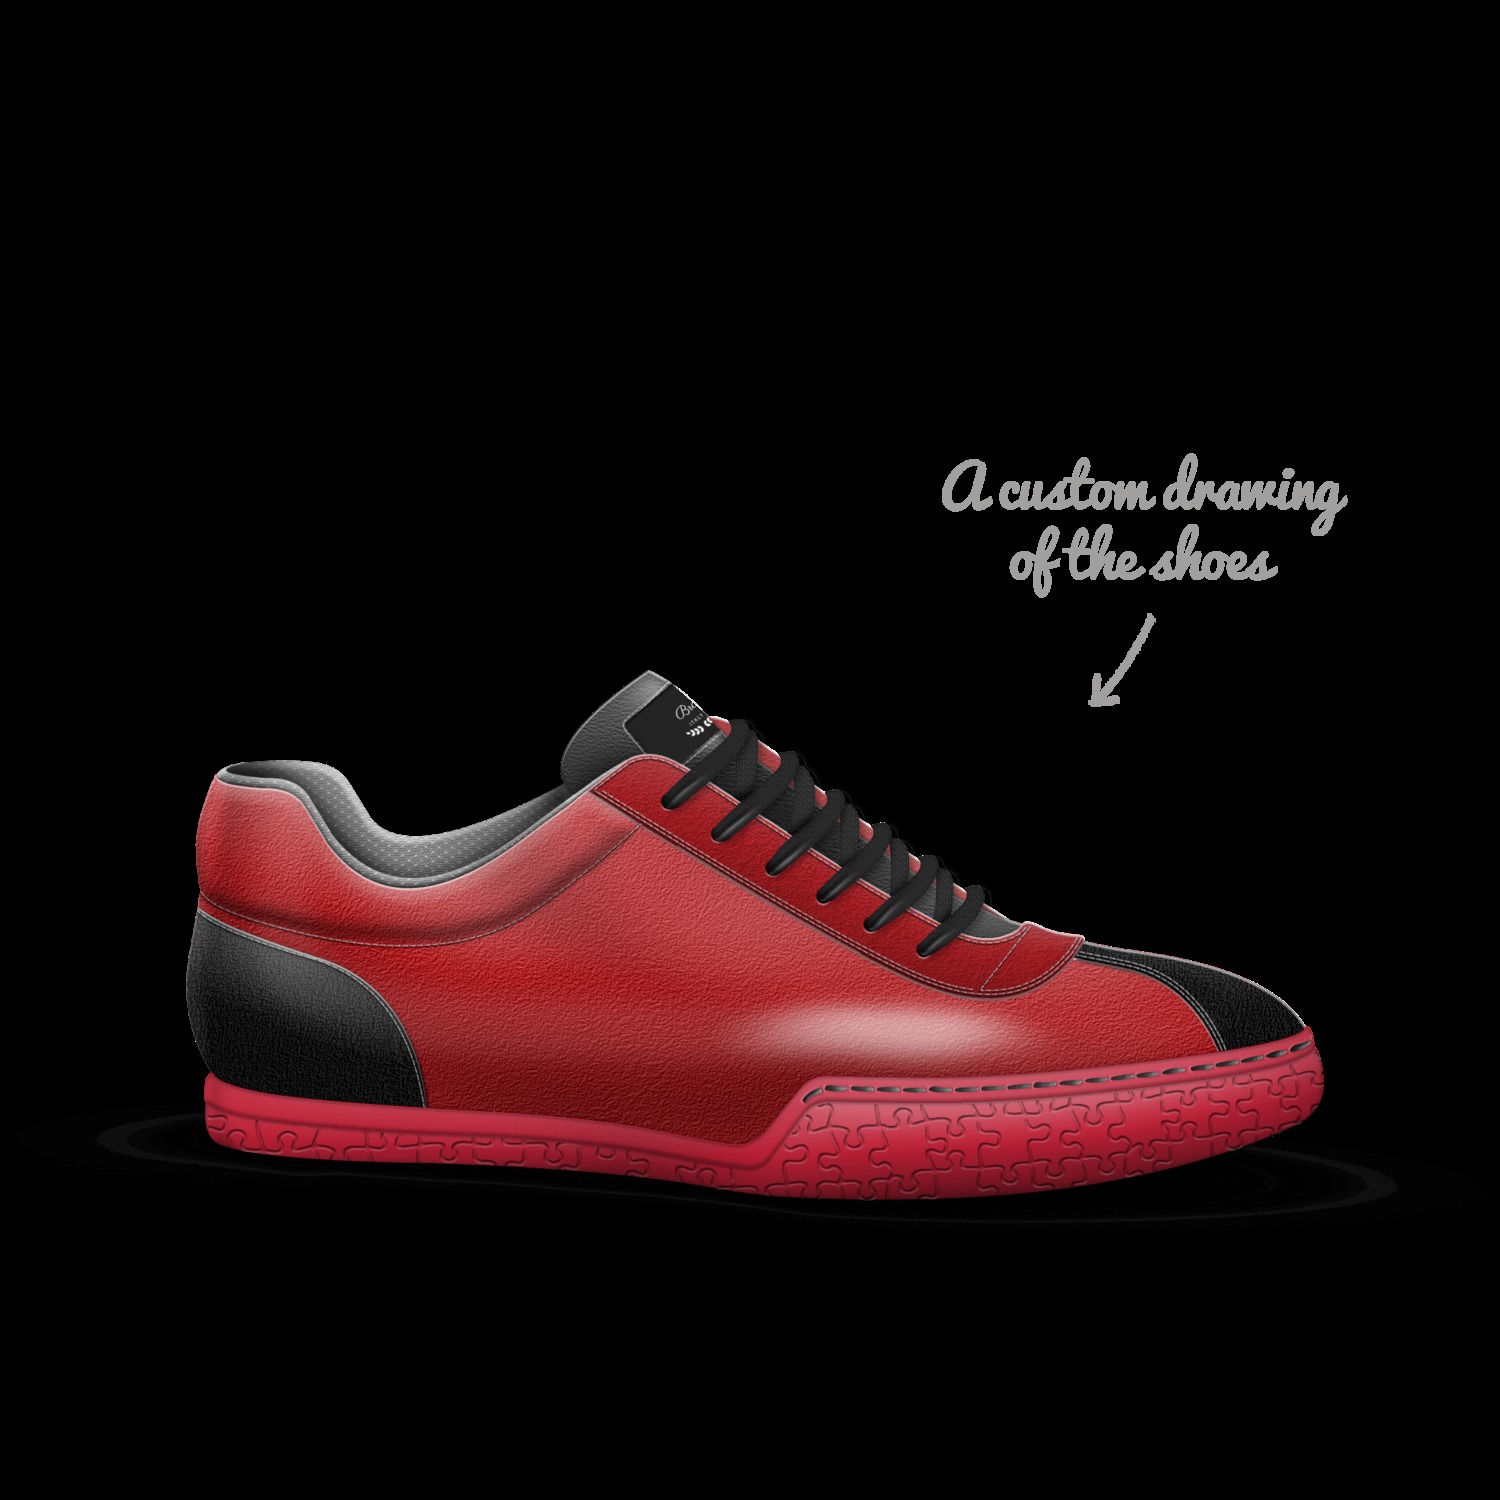 Aauwen-r Brown Men's Sneakers | ALDO US